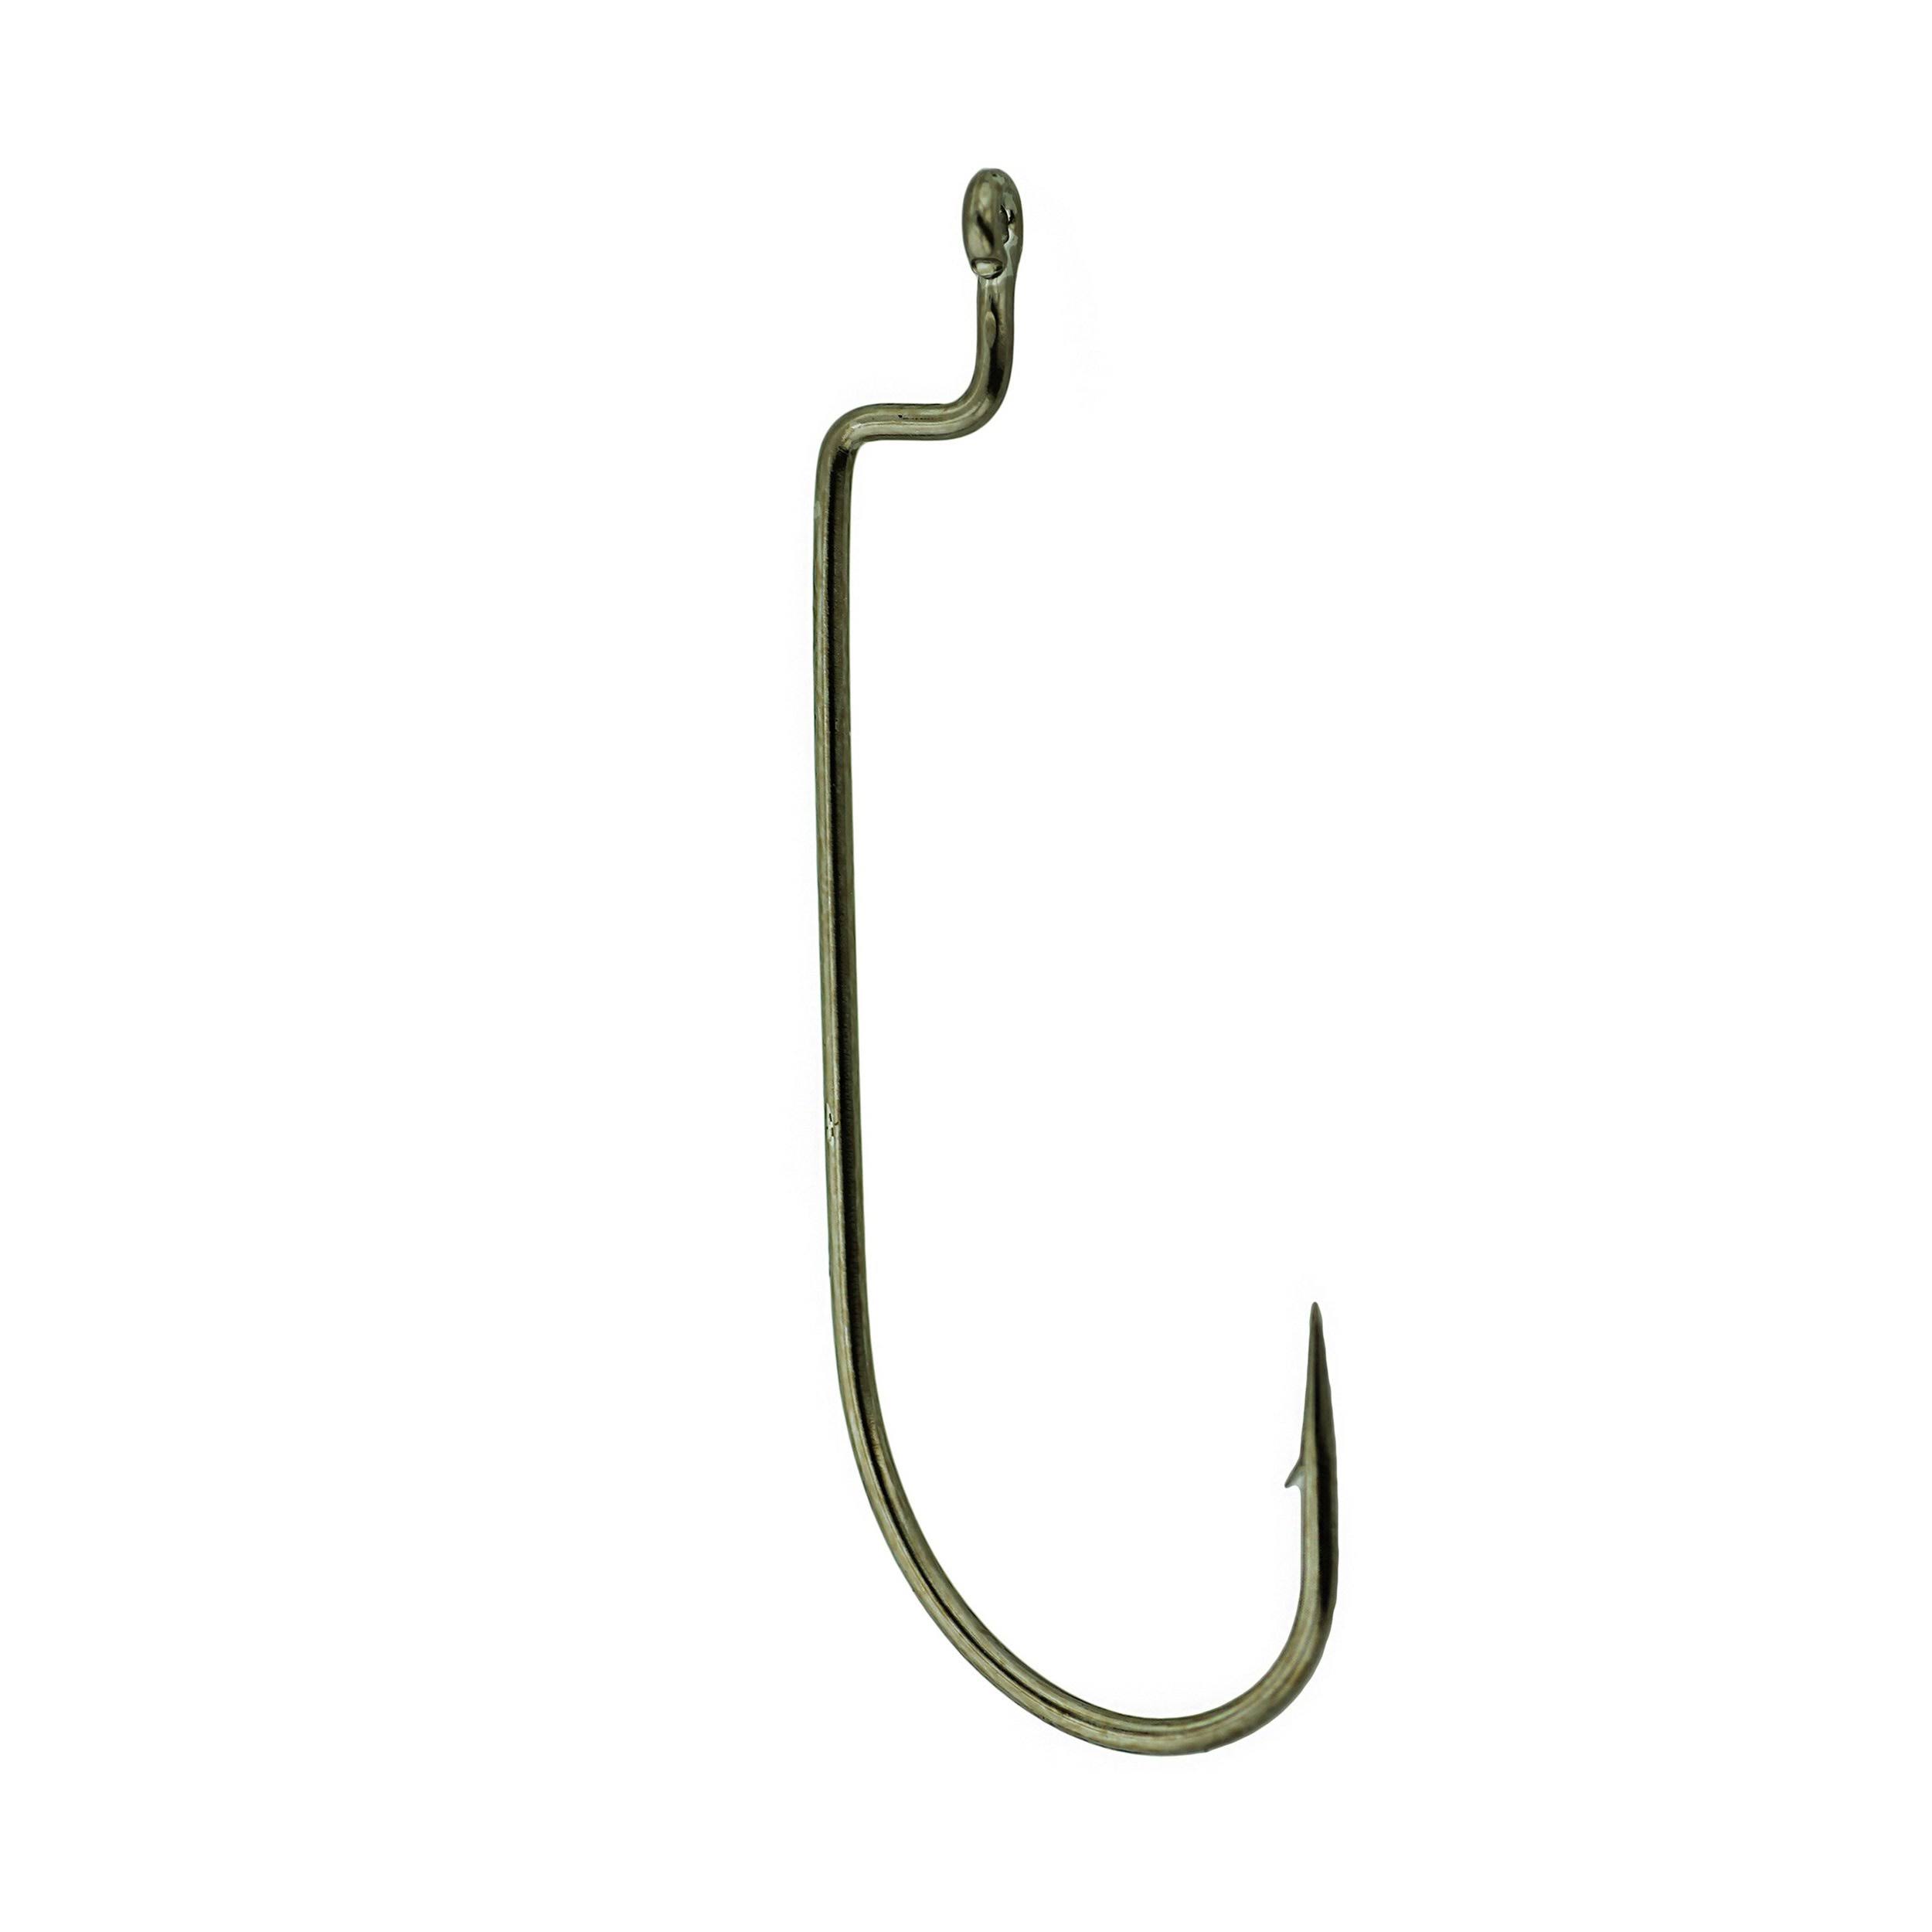 Gamakatsu Worm Offset Shank Fishing Hook - Bronze, Size 1/0, 6pk